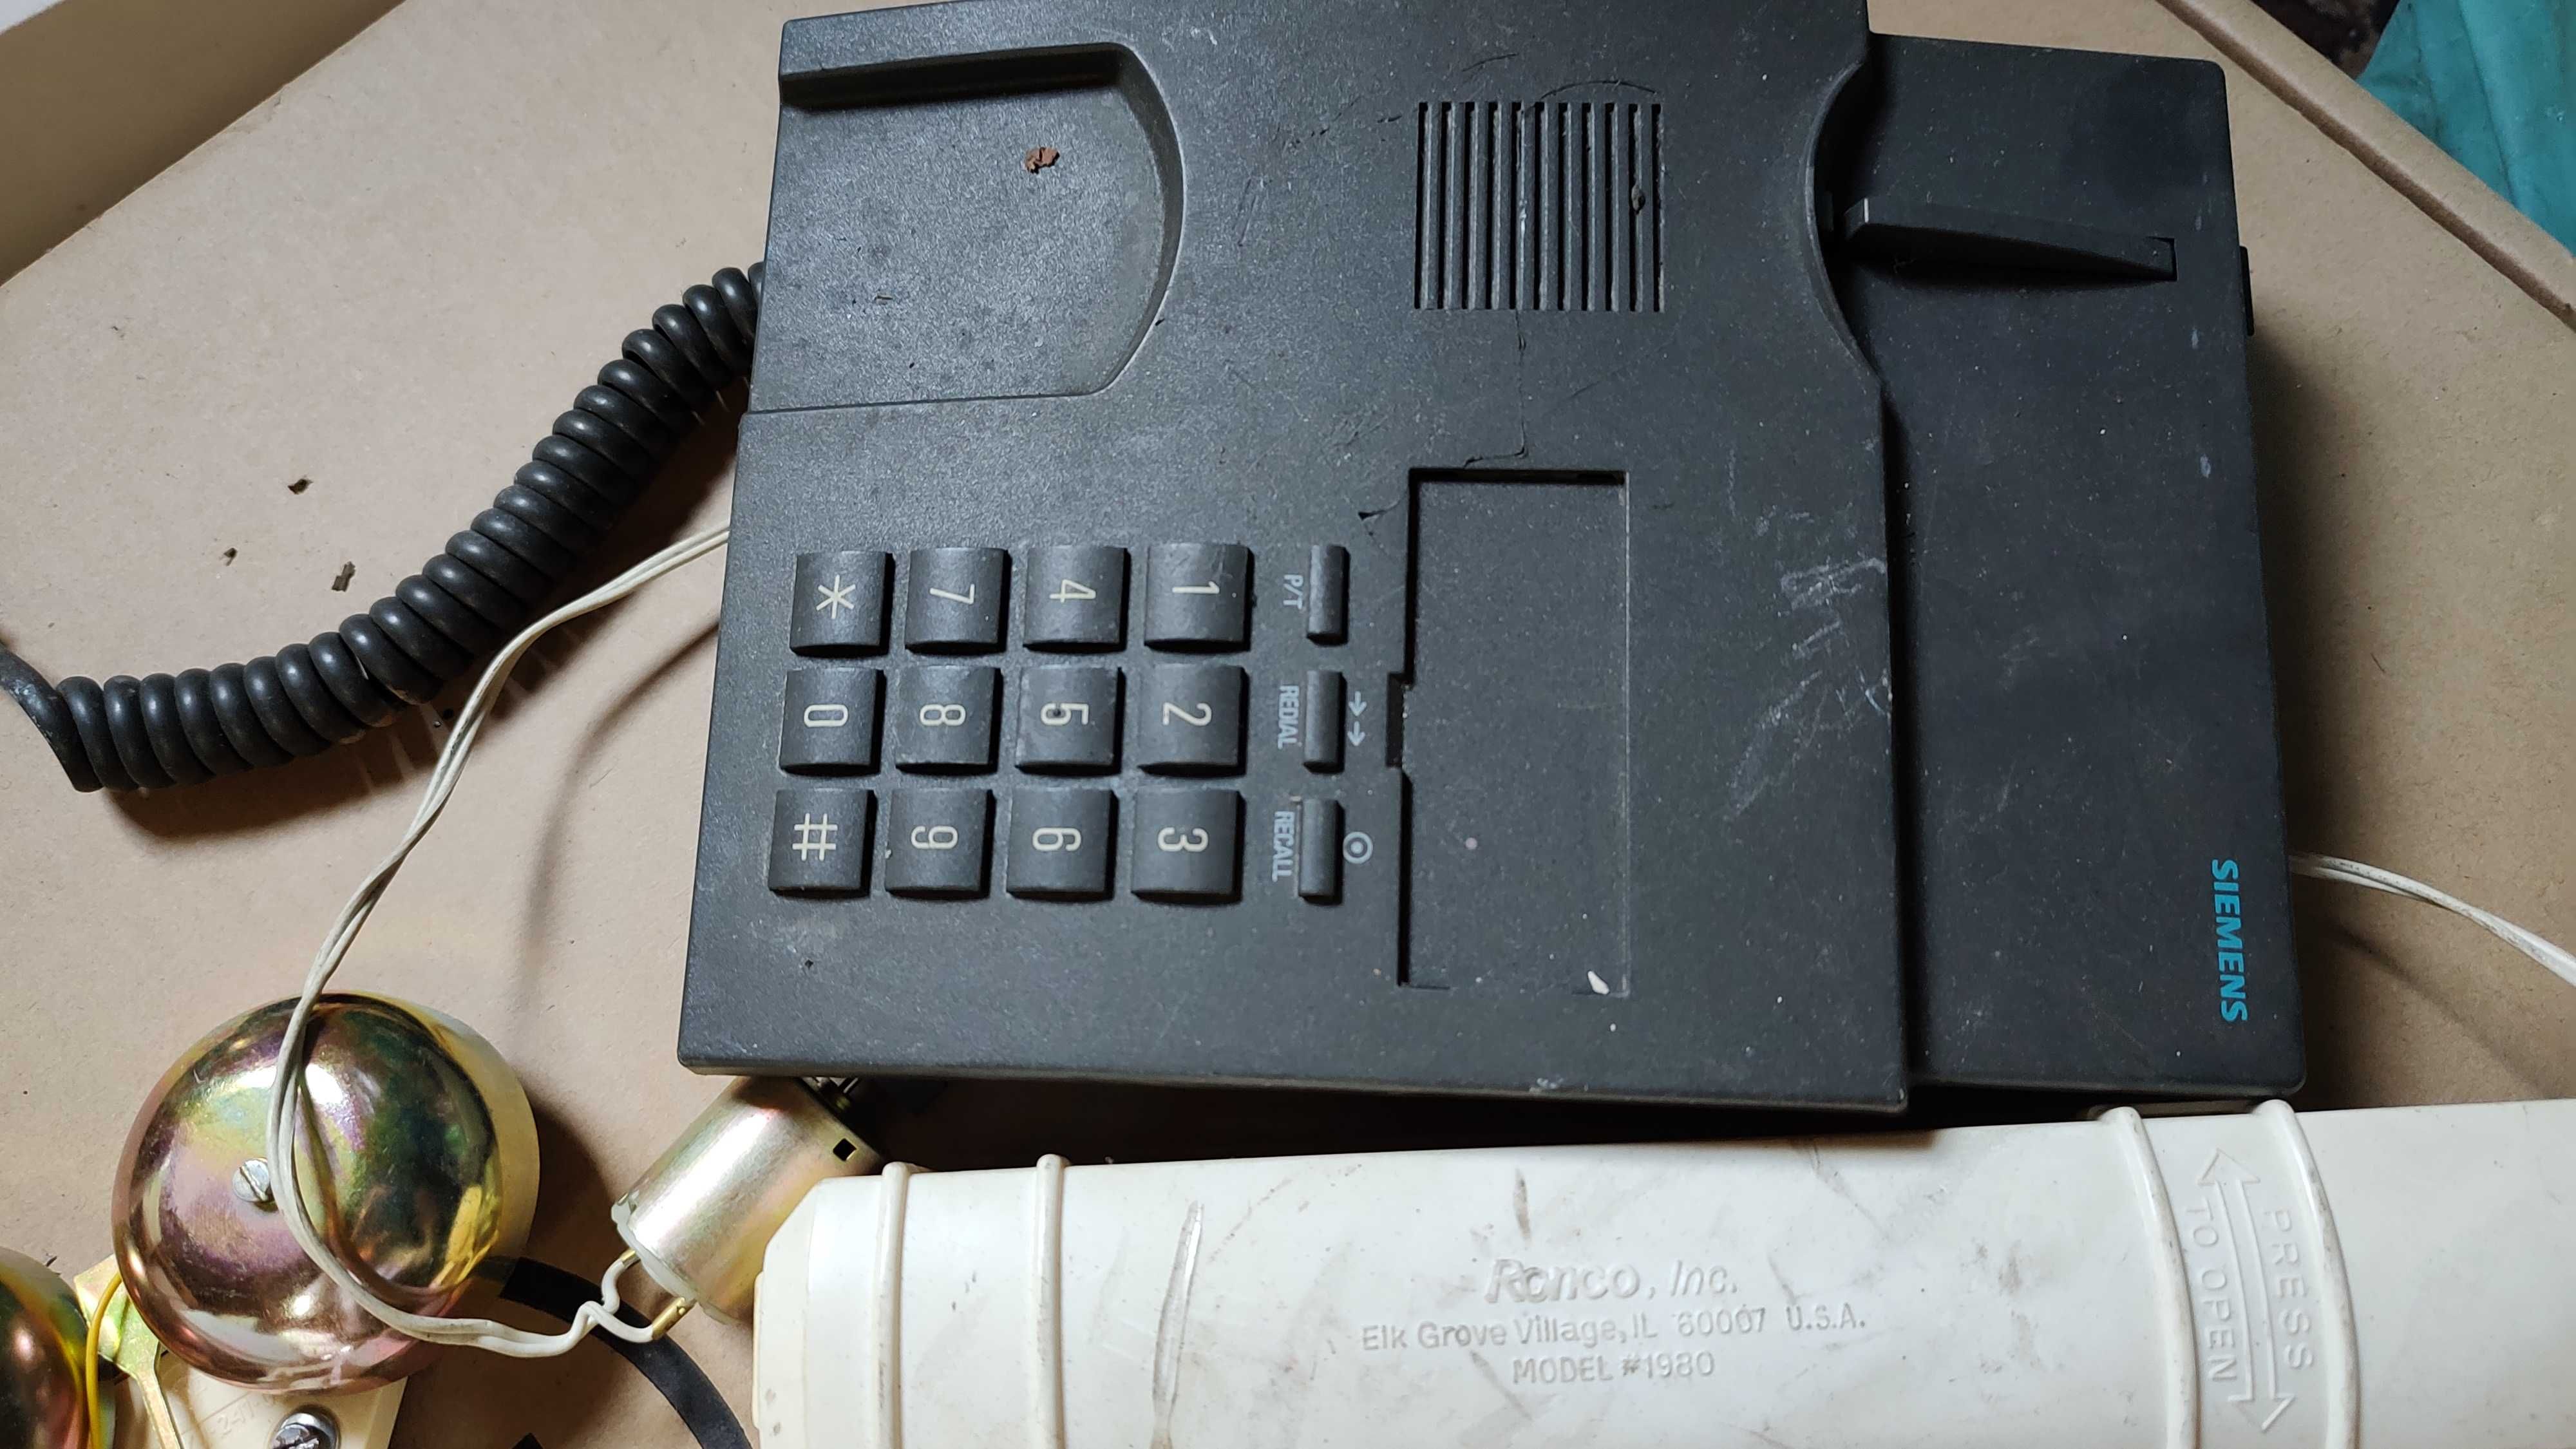 Sprzęt radziecki telefon i inne akcesoria rzeczy prl komplet